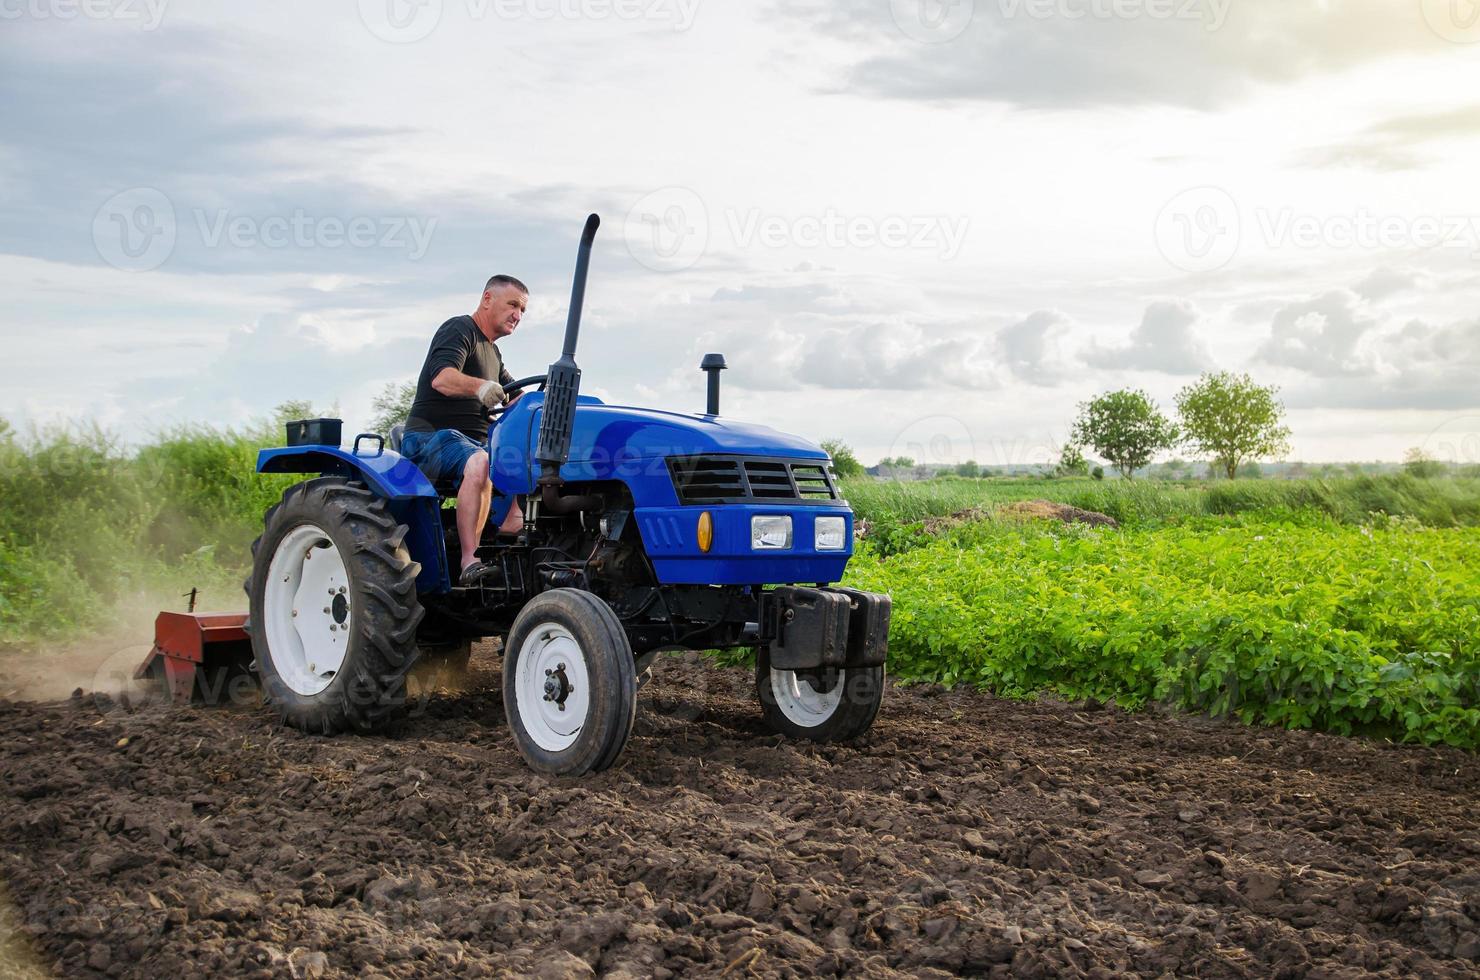 jordbrukare på traktor odlar bruka fält. fräsning jord, förkrossande och lossna jord innan skärande rader. jordbruk, lantbruk. förberedande markarbeten innan plantering en ny beskära. landa odling foto